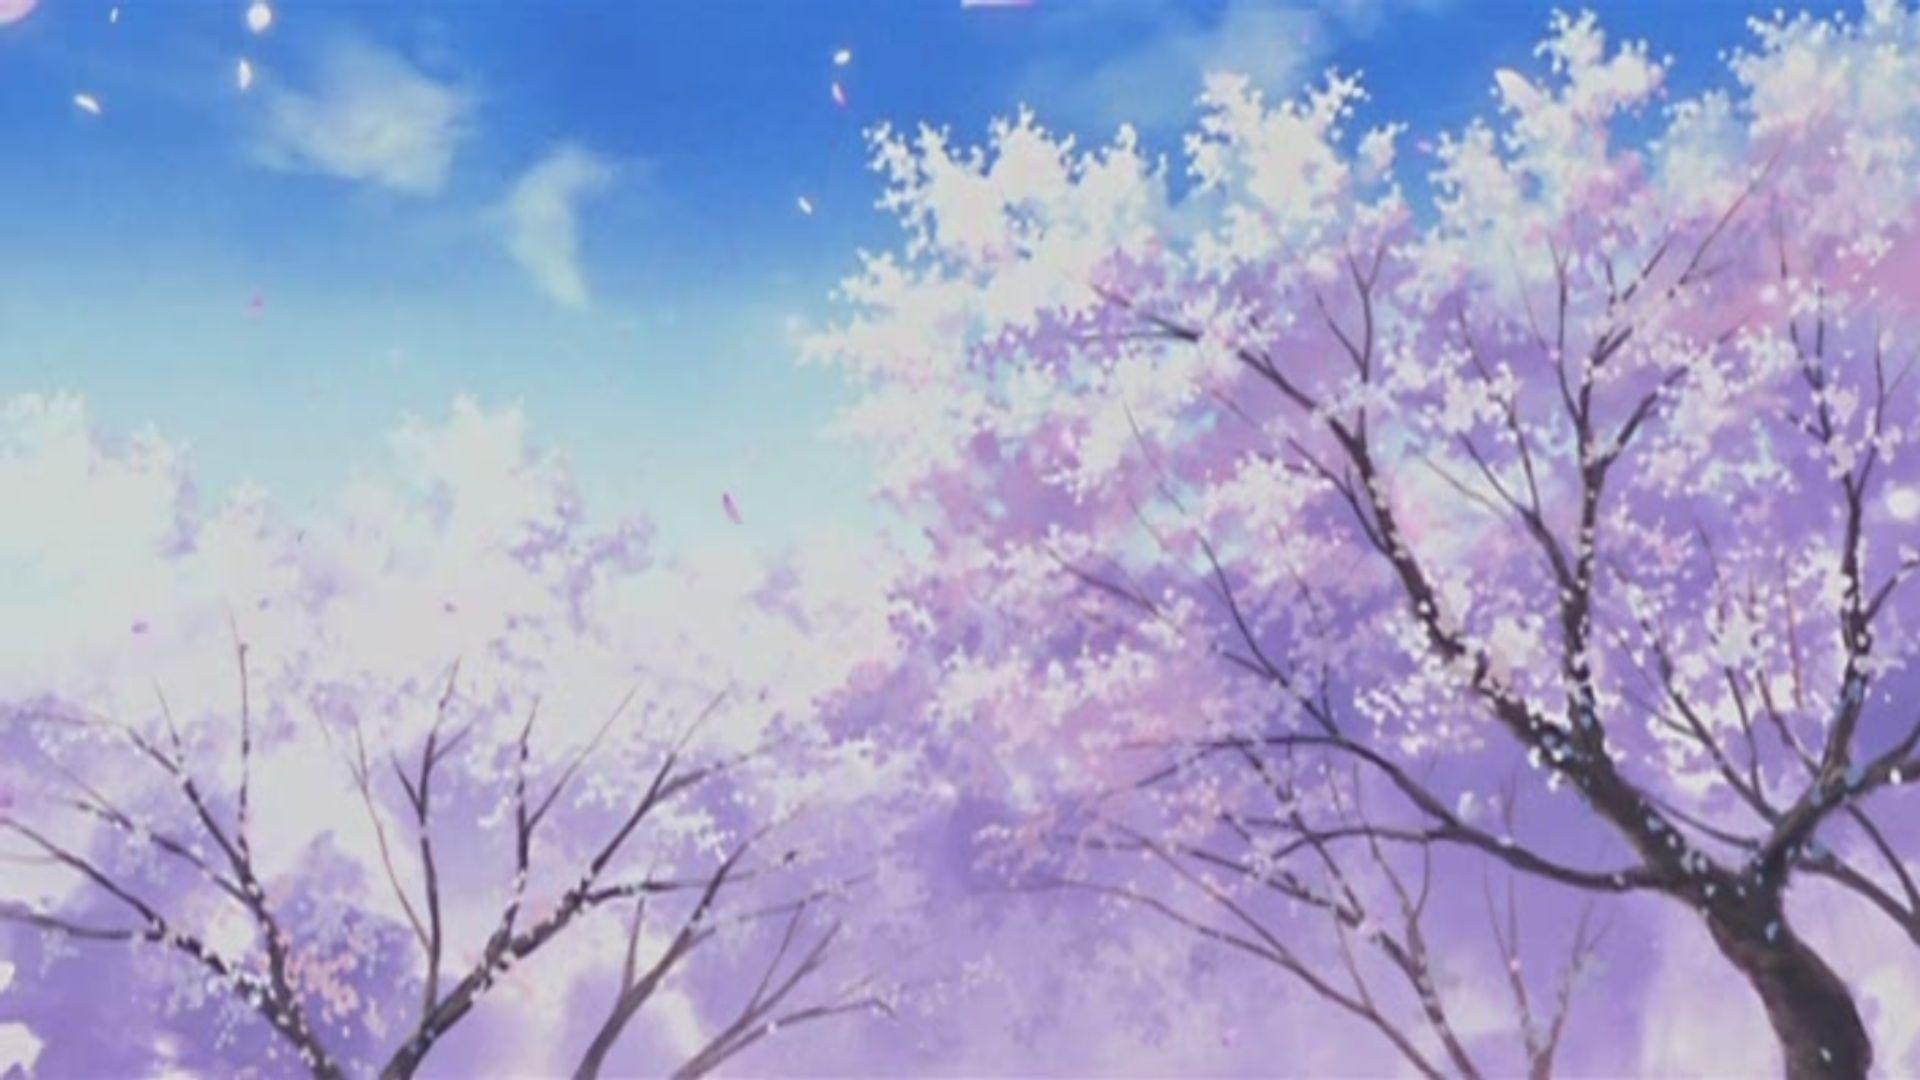 Cherry Blossom Anime Scenery Wallpaper Free Do Wallpaper. Anime scenery wallpaper, Anime cherry blossom, Aesthetic desktop wallpaper